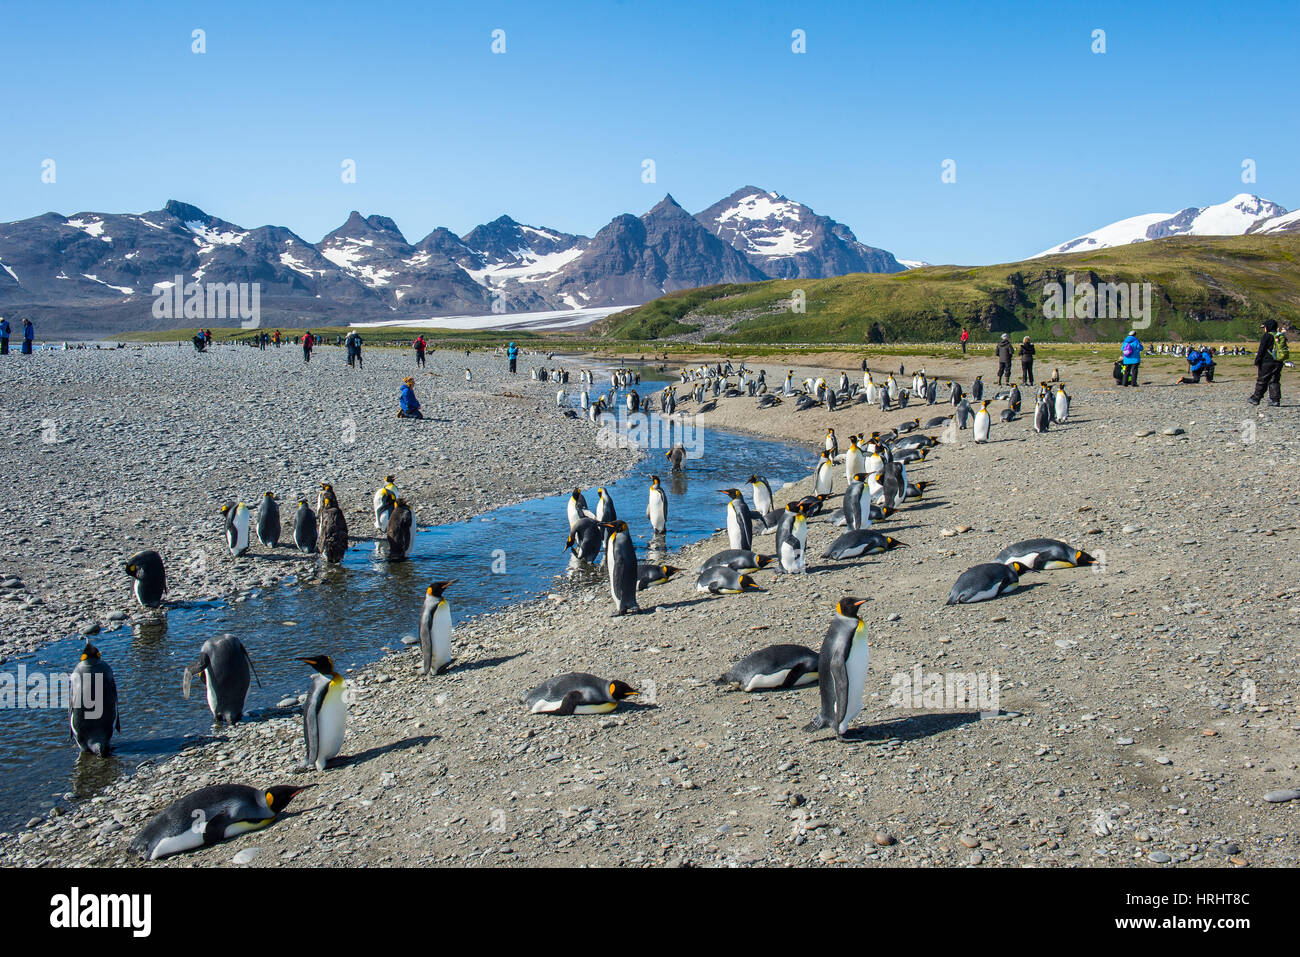 Le roi géant penguin (Aptenodytes patagonicus) colonie, la plaine de Salisbury, la Géorgie du Sud, l'Antarctique, régions polaires Banque D'Images